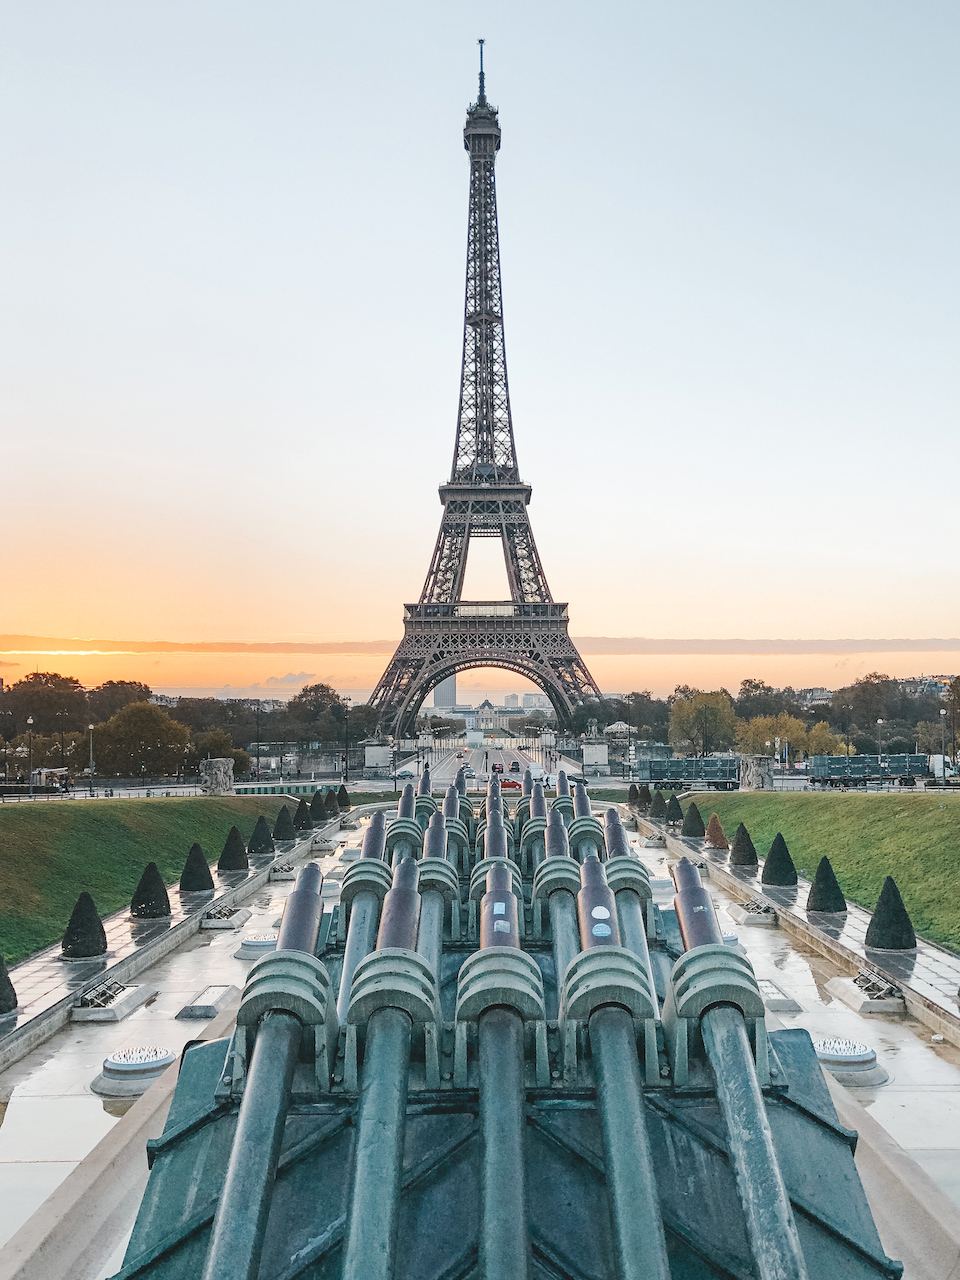 Les canons devant la tour Eiffel - Paris - France